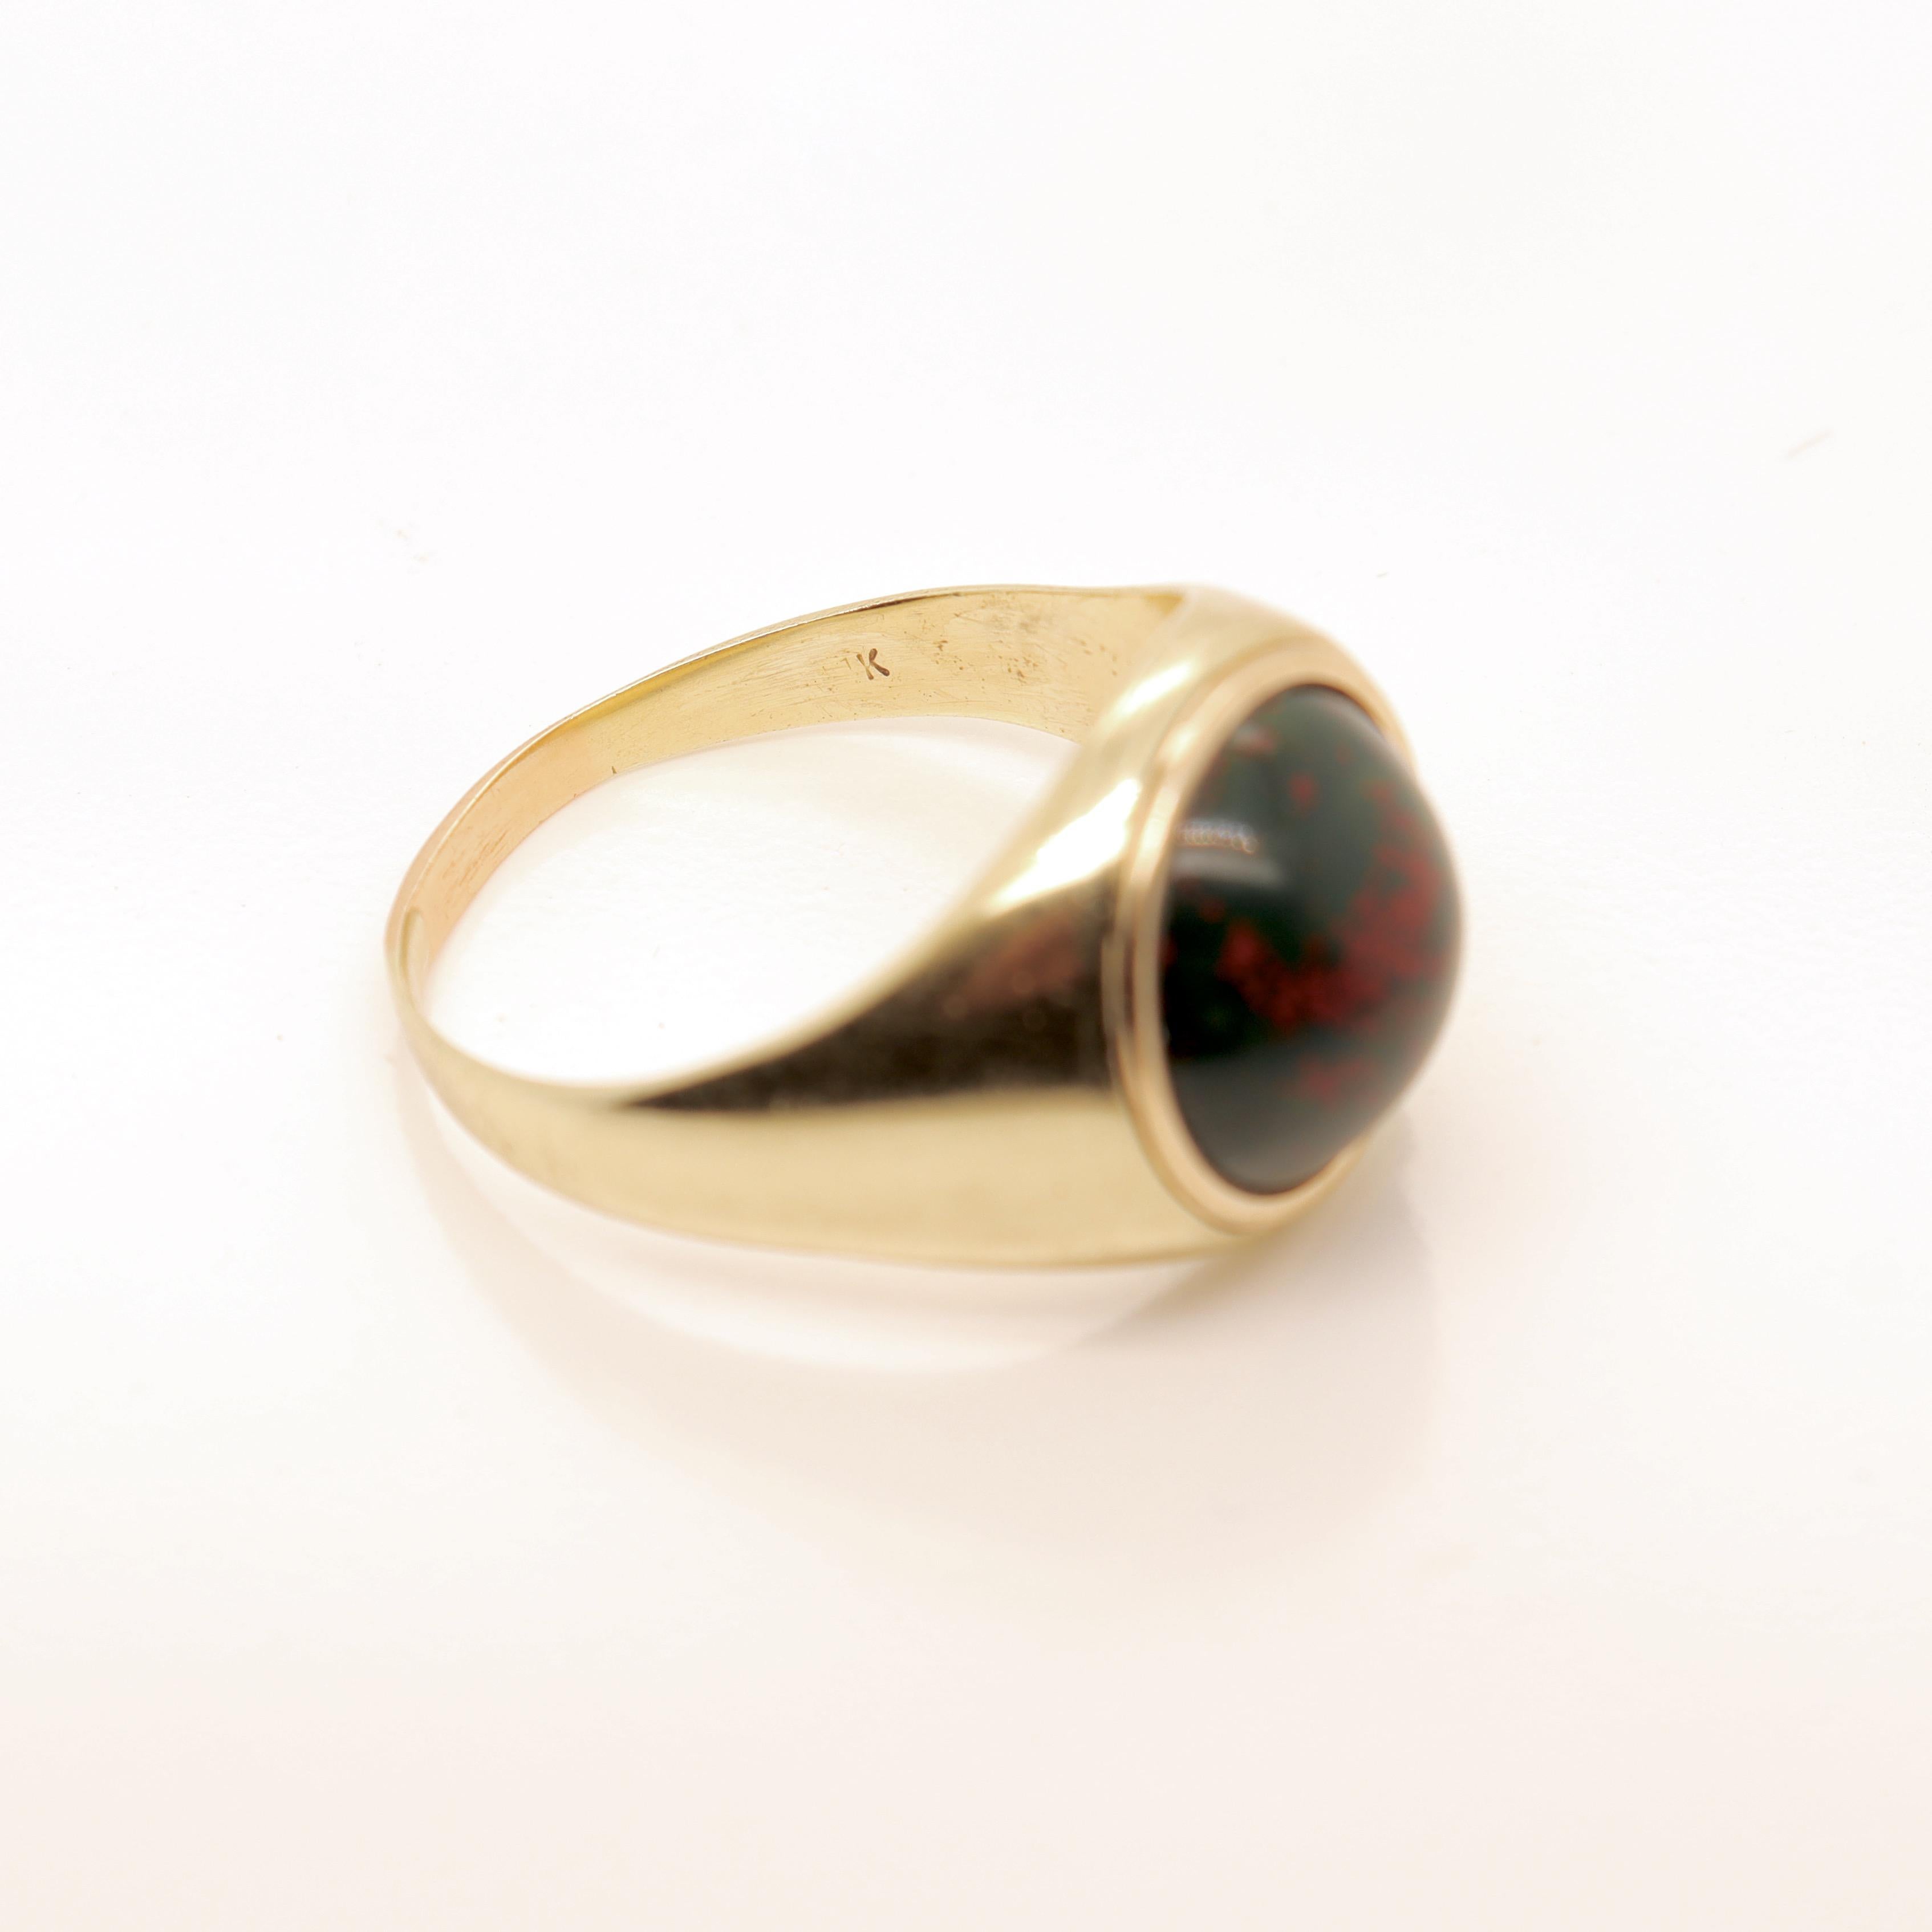 Signed Edwardian Marcus & Co 14K Gold & Bloodstone Cabochon Signet Style Ring 5